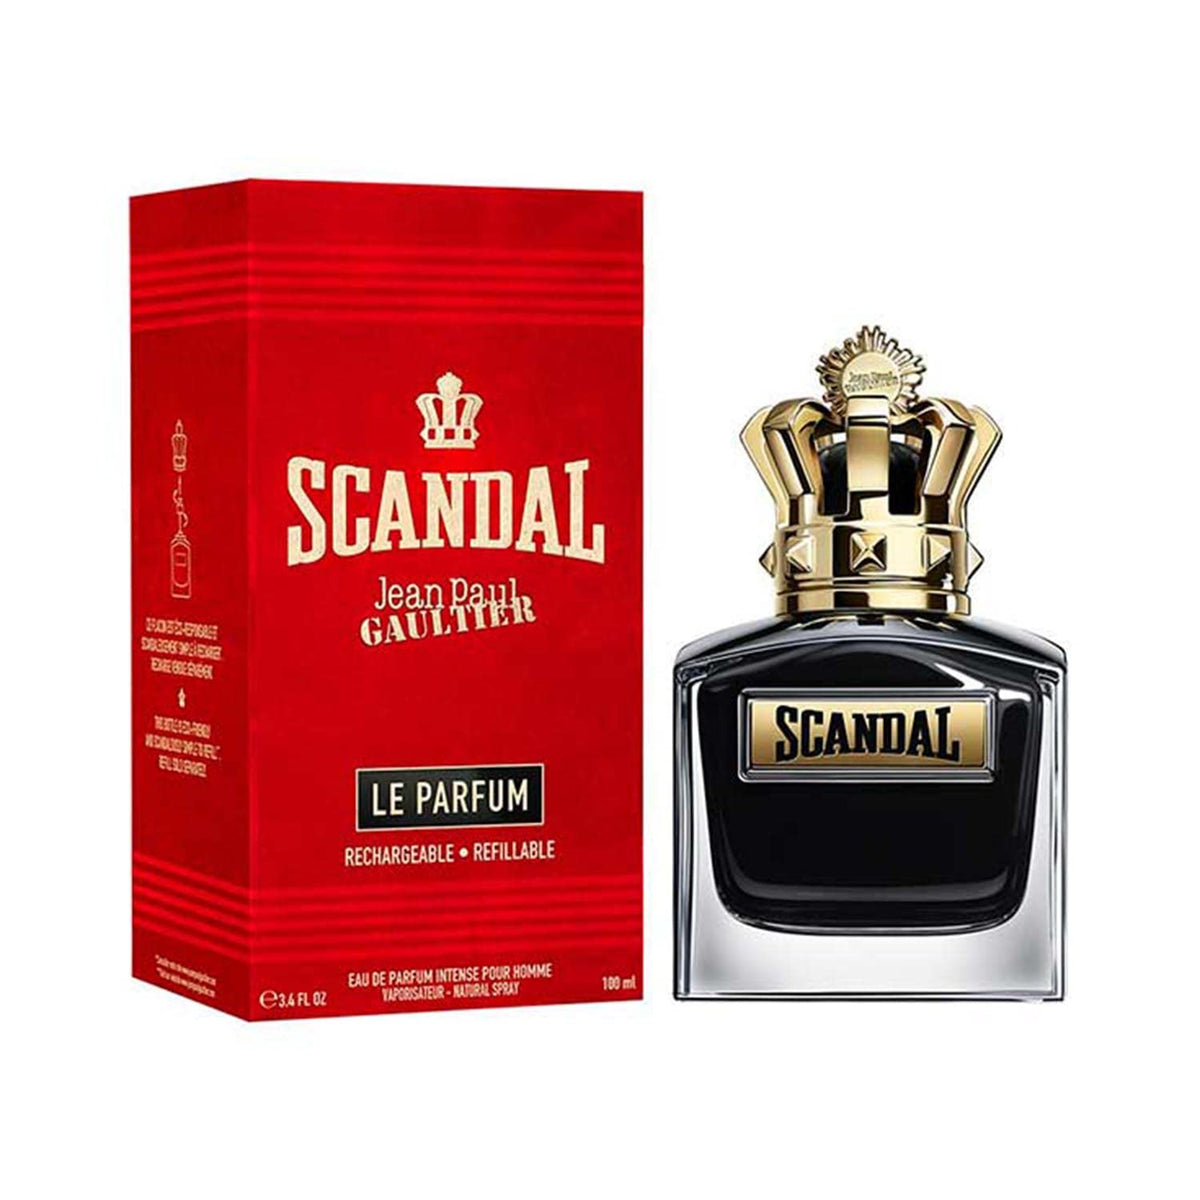 Jean Paul Scandal Pour Homme - Le Parfum - Eau De Parfum Intense -100ml